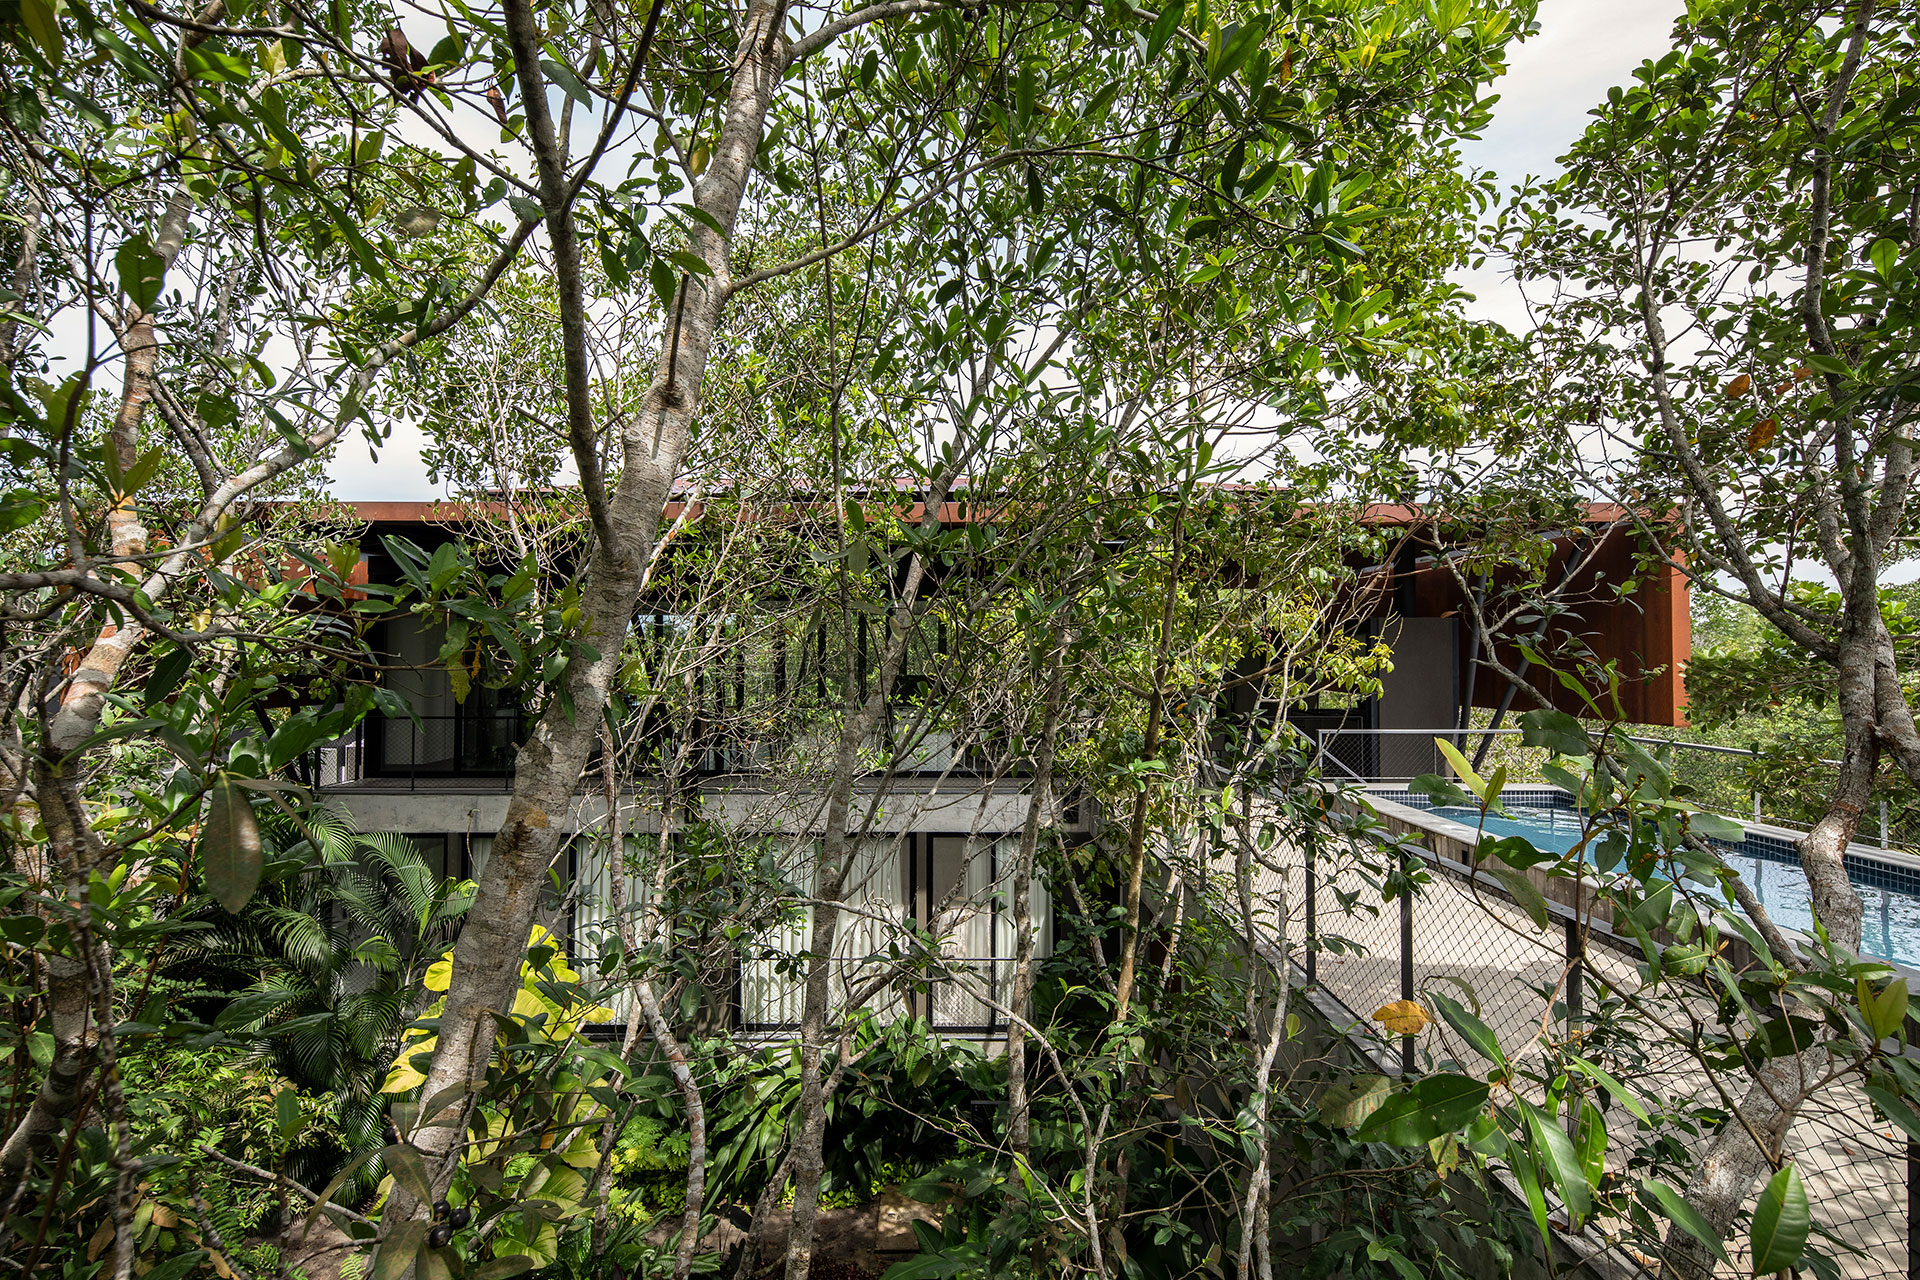 casa campinarana amazonia manaus arquitetura sustentável sustentabilidade amazonas jardim